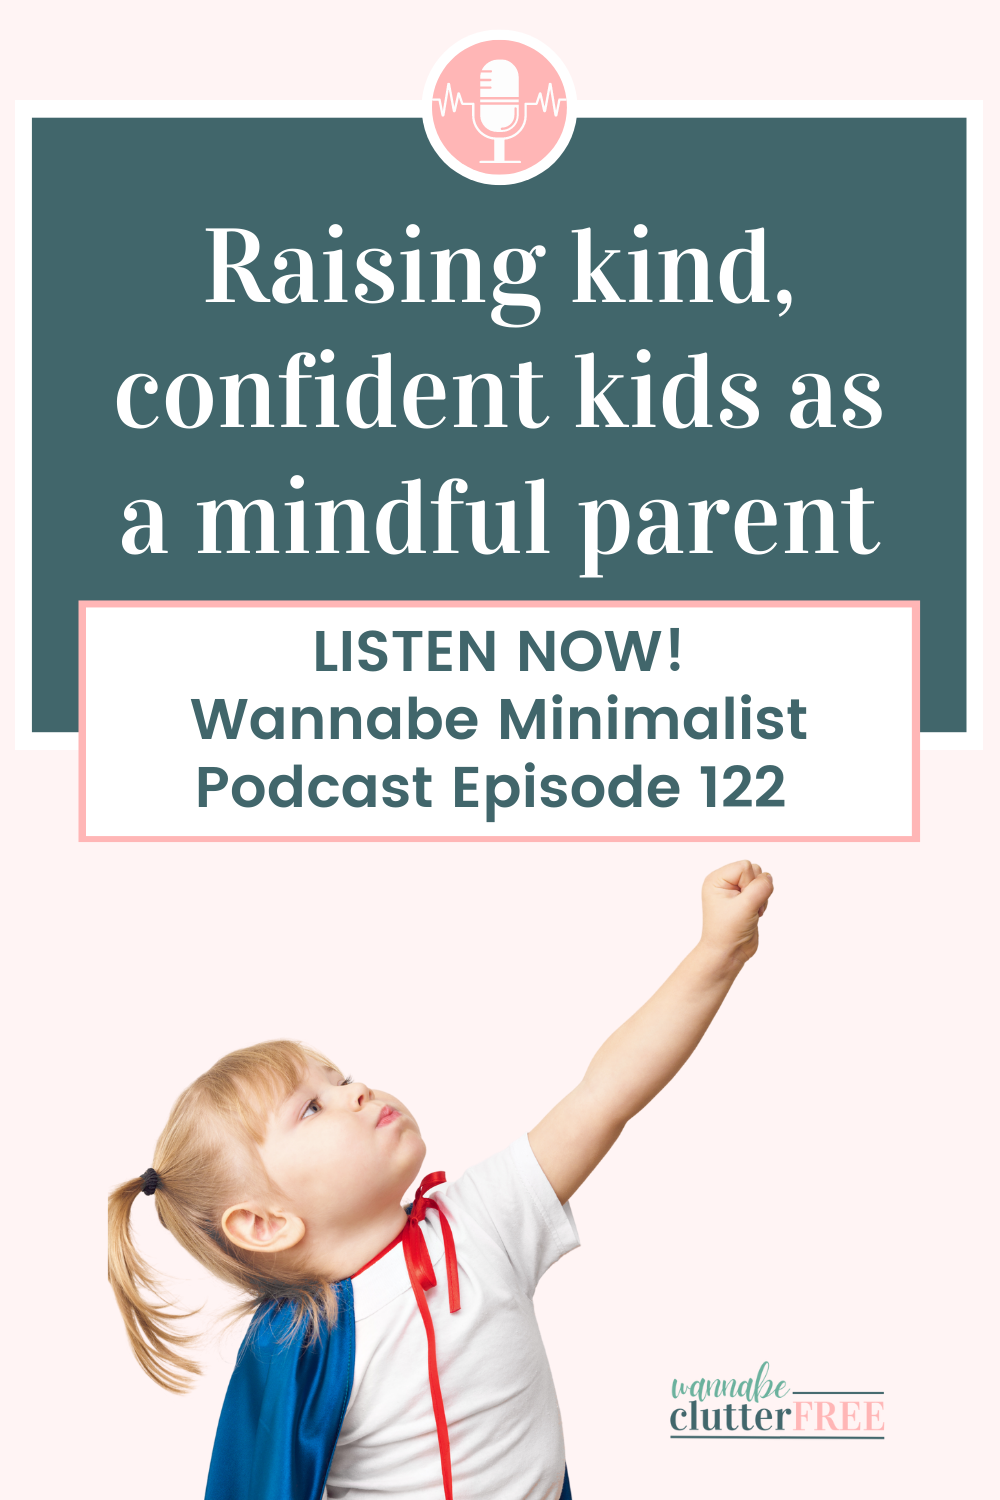 Raising kind, confident kids as a mindful parent